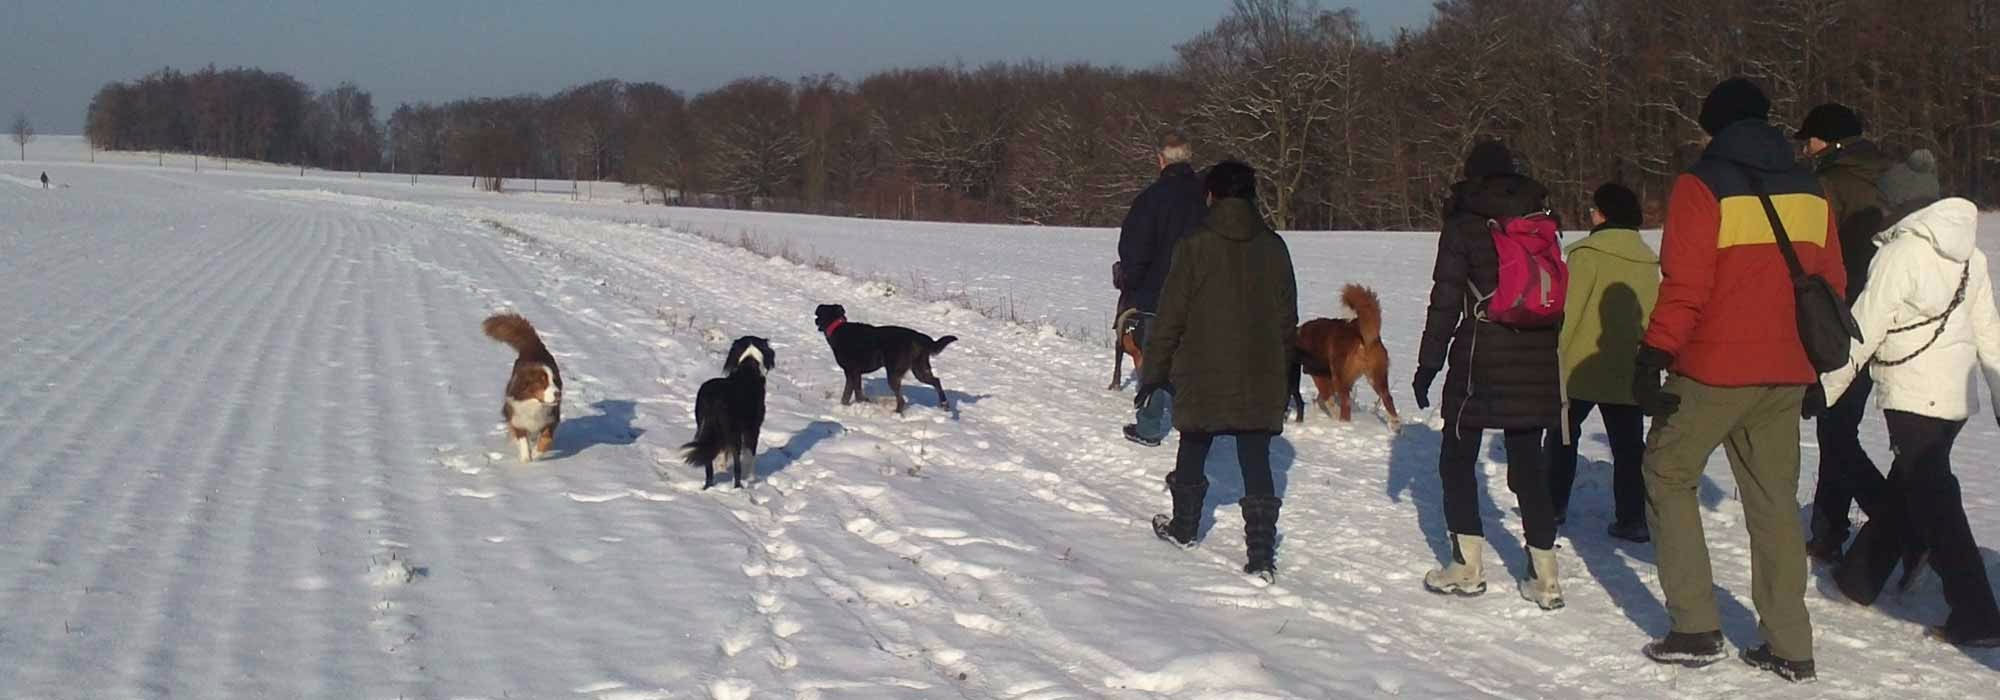 AnimalmanShip biete Hundewanderungen in der Dresdener Heide an